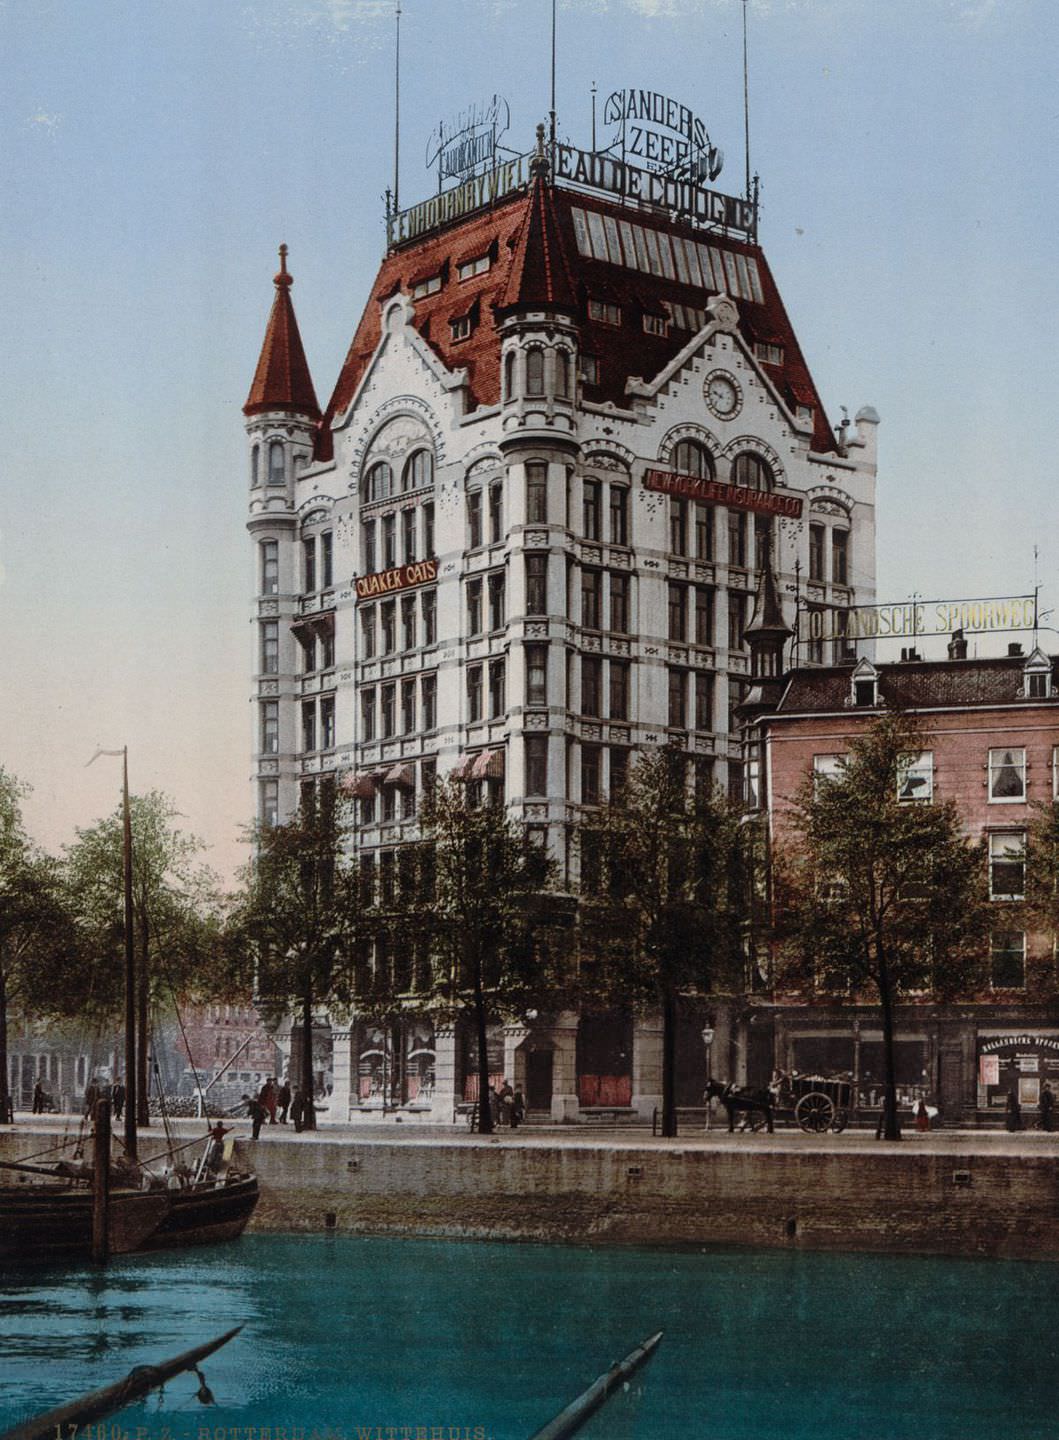 The Witte Huis, Rotterdam.